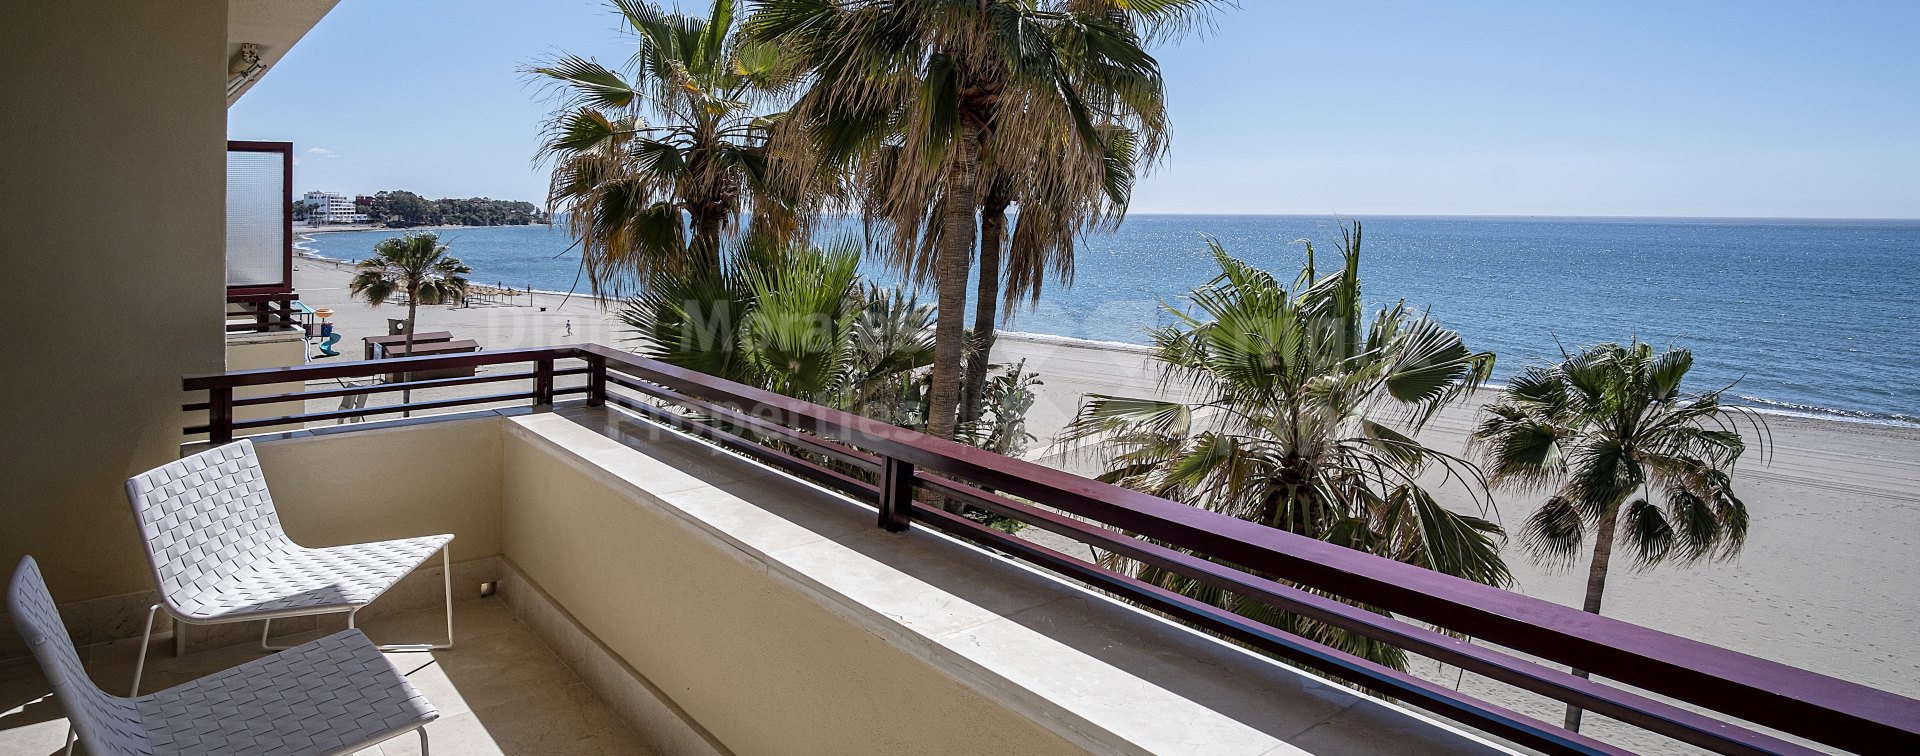 Estepona Playa, Schönes Strand-Apartment in erster Linie